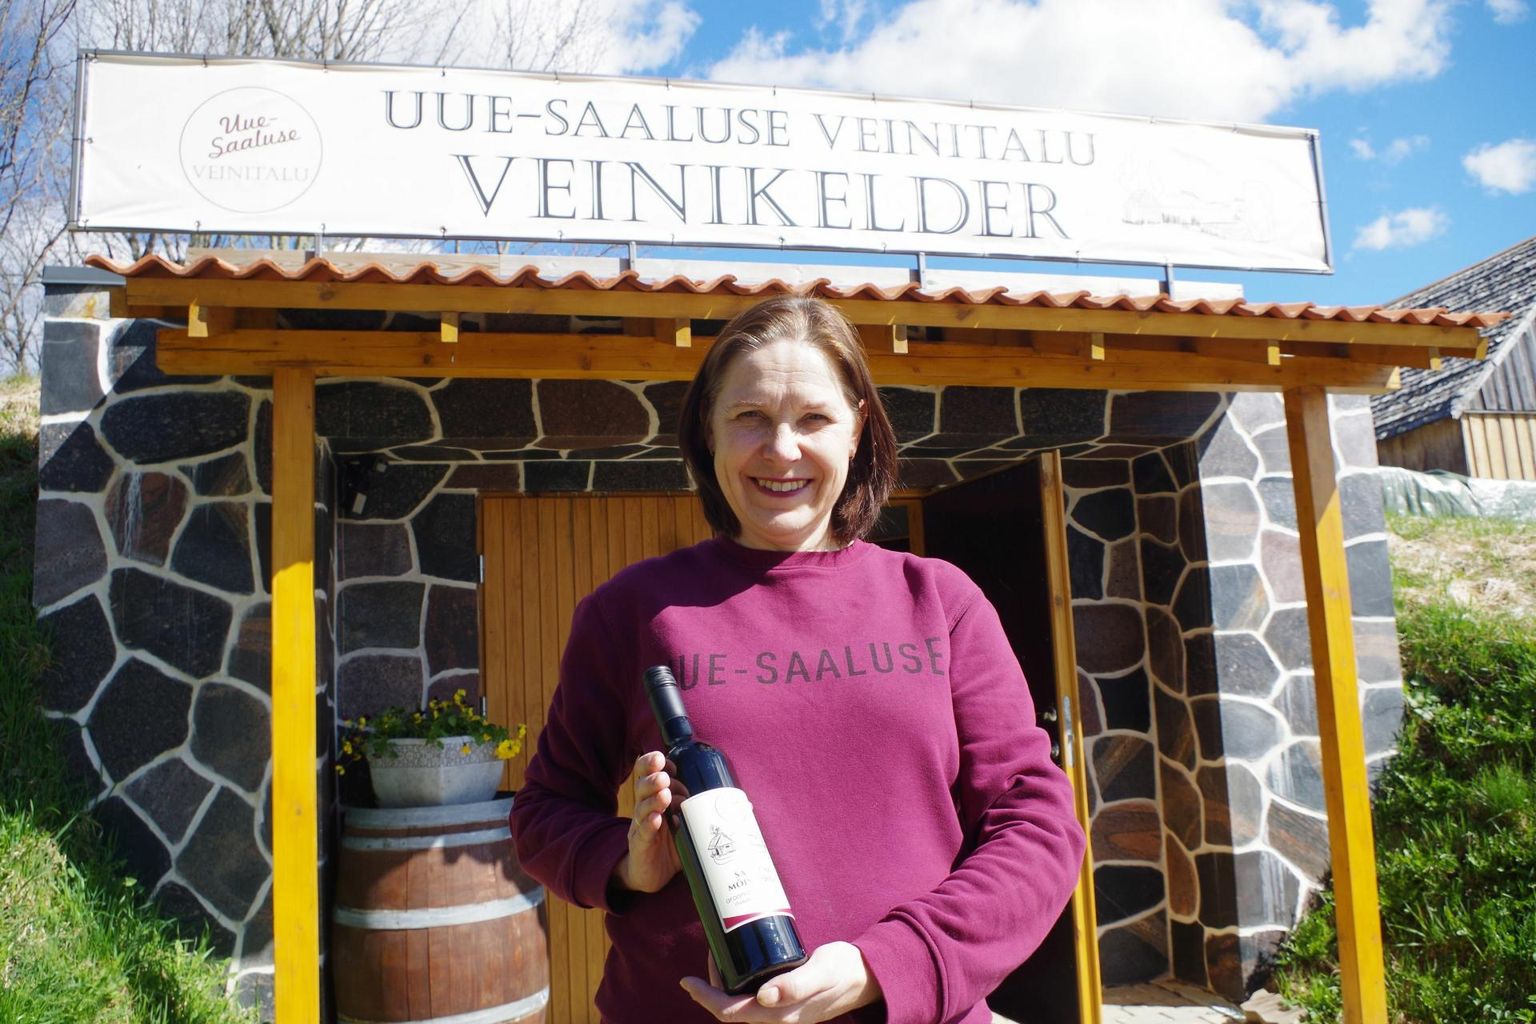 Haanjamaal asuva Uue-Saaluse veinitalu perenaise Maris Kivistiku sõnul läks neil hiljutisel Eesti parima joogi konkursil väga hästi.

 